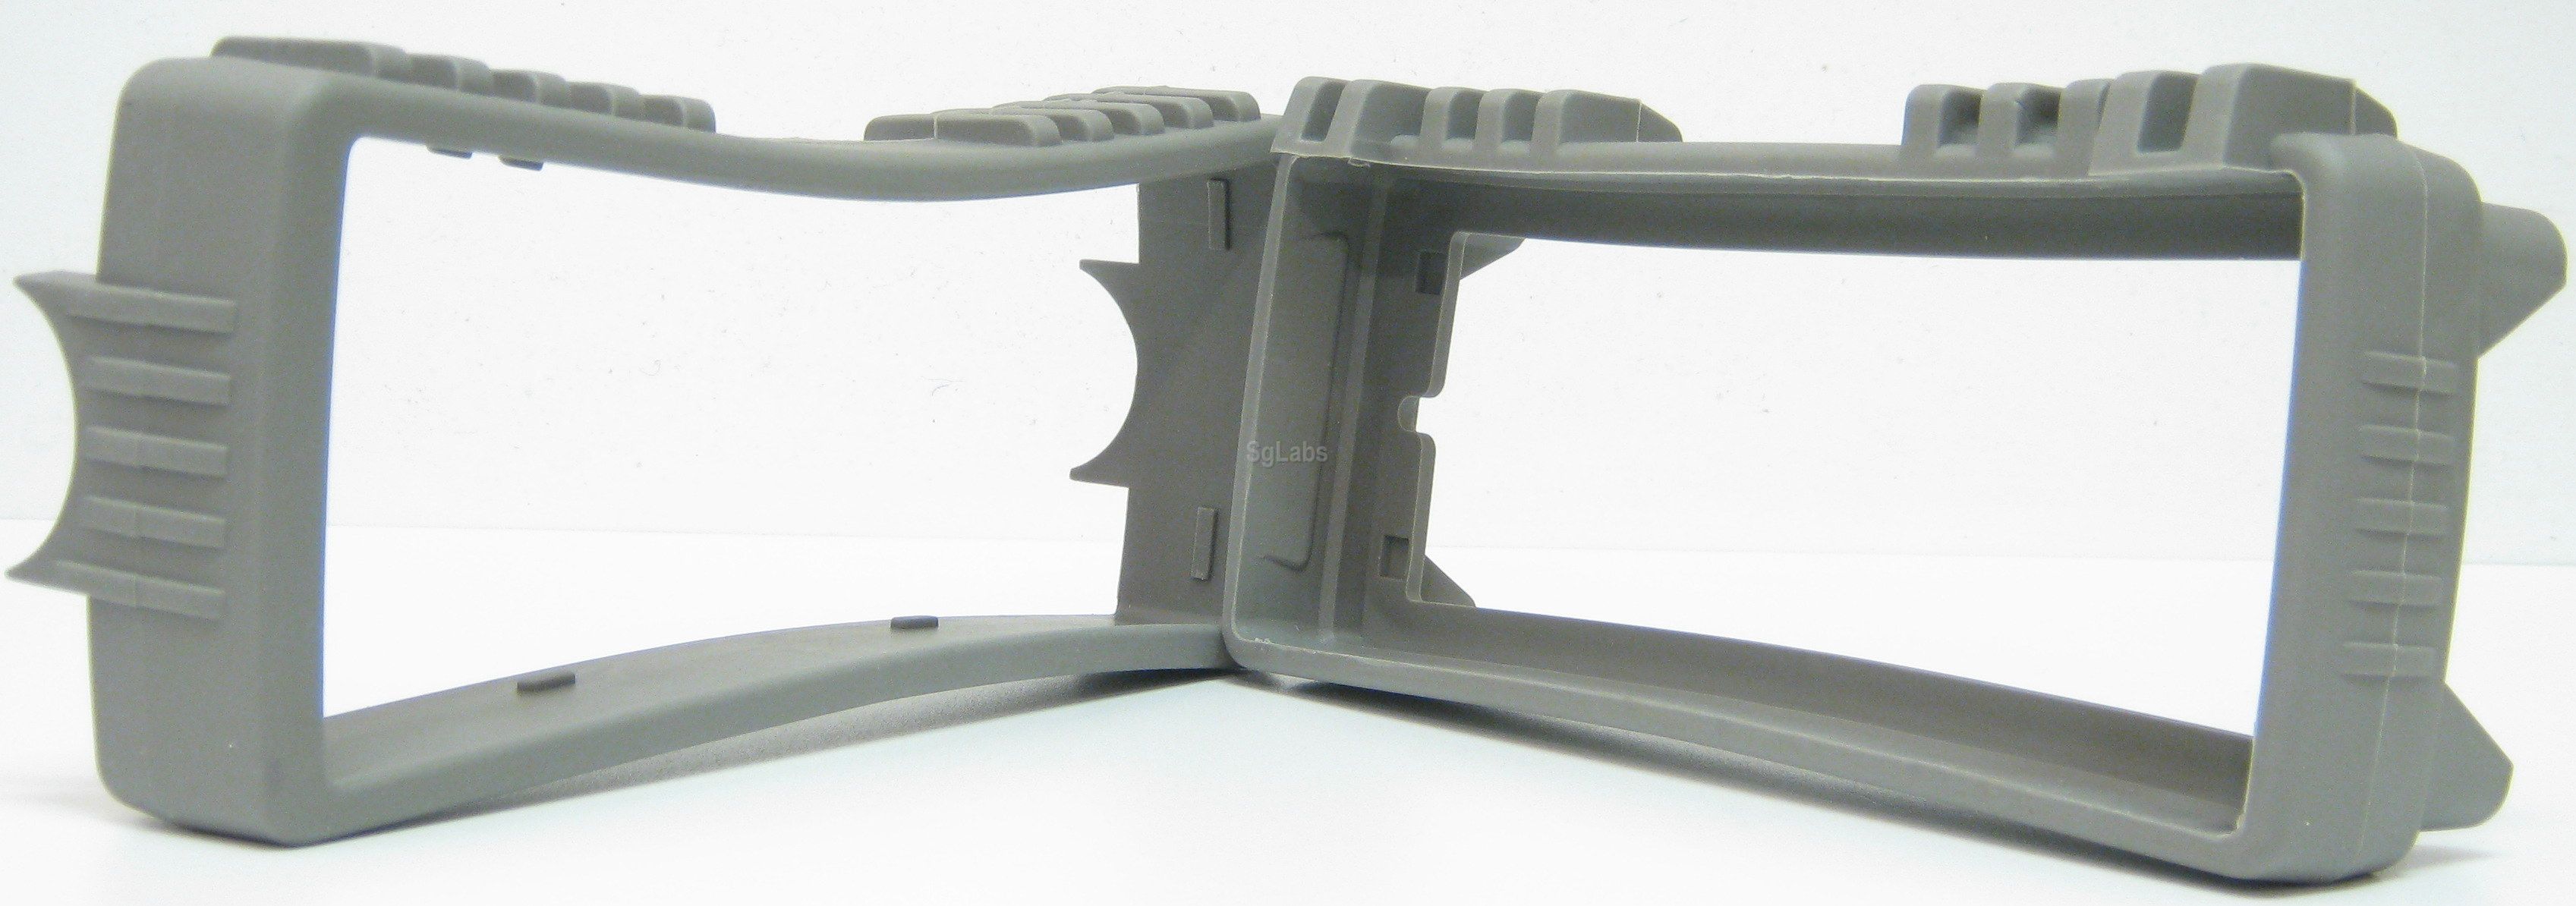 Bumper Agilent HP Keysight 34401-86010 Kit Light Gray Front & Rear 